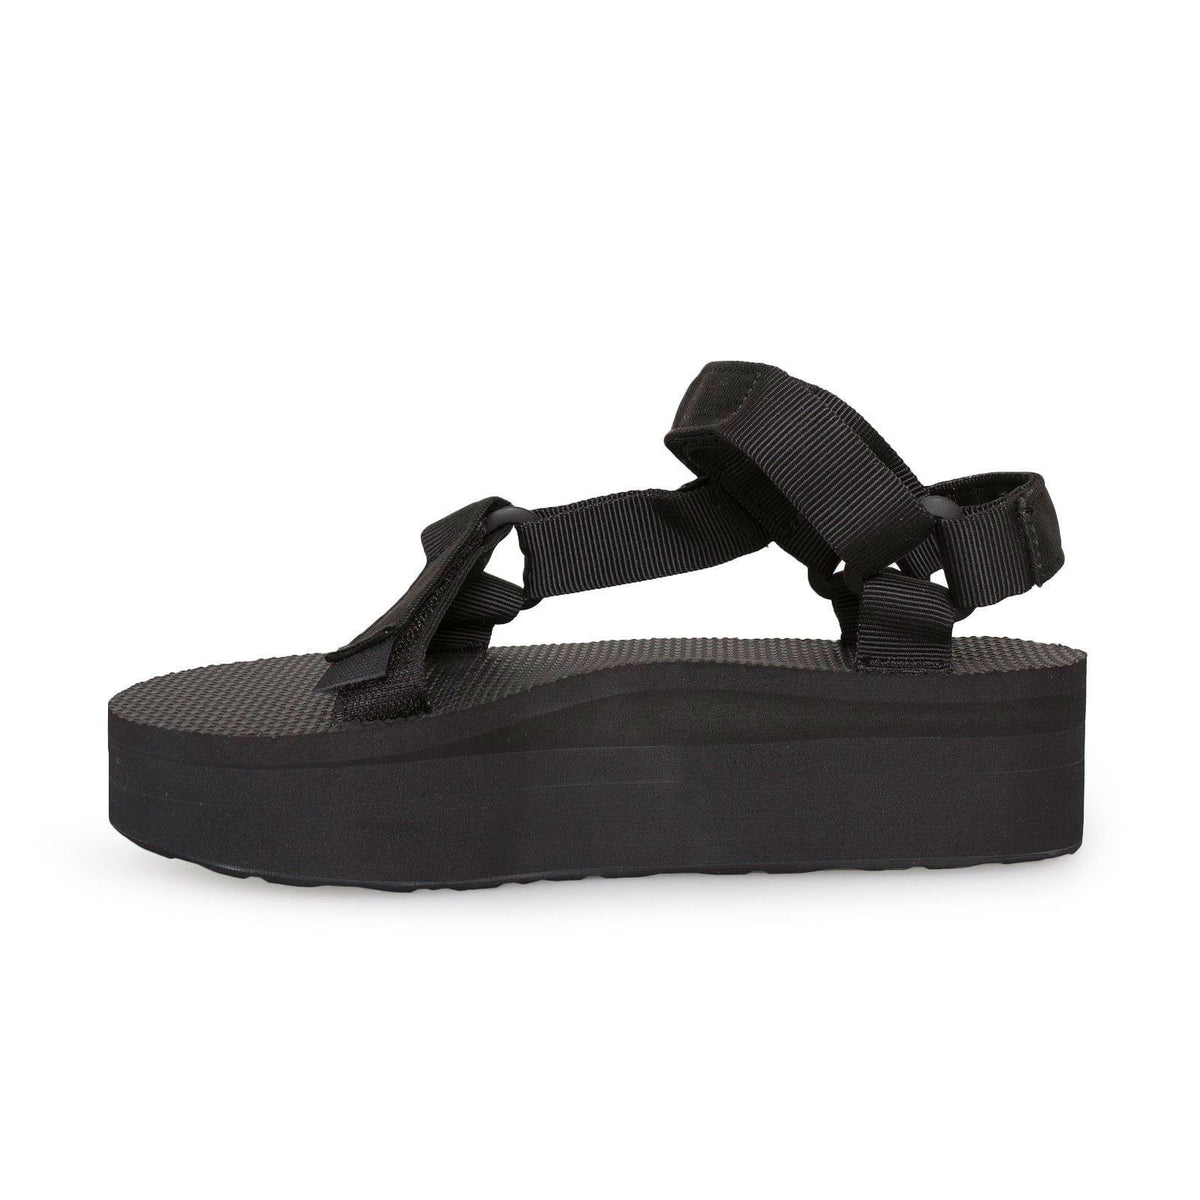 Teva Flatform Universal Black Sandals – MyCozyBoots